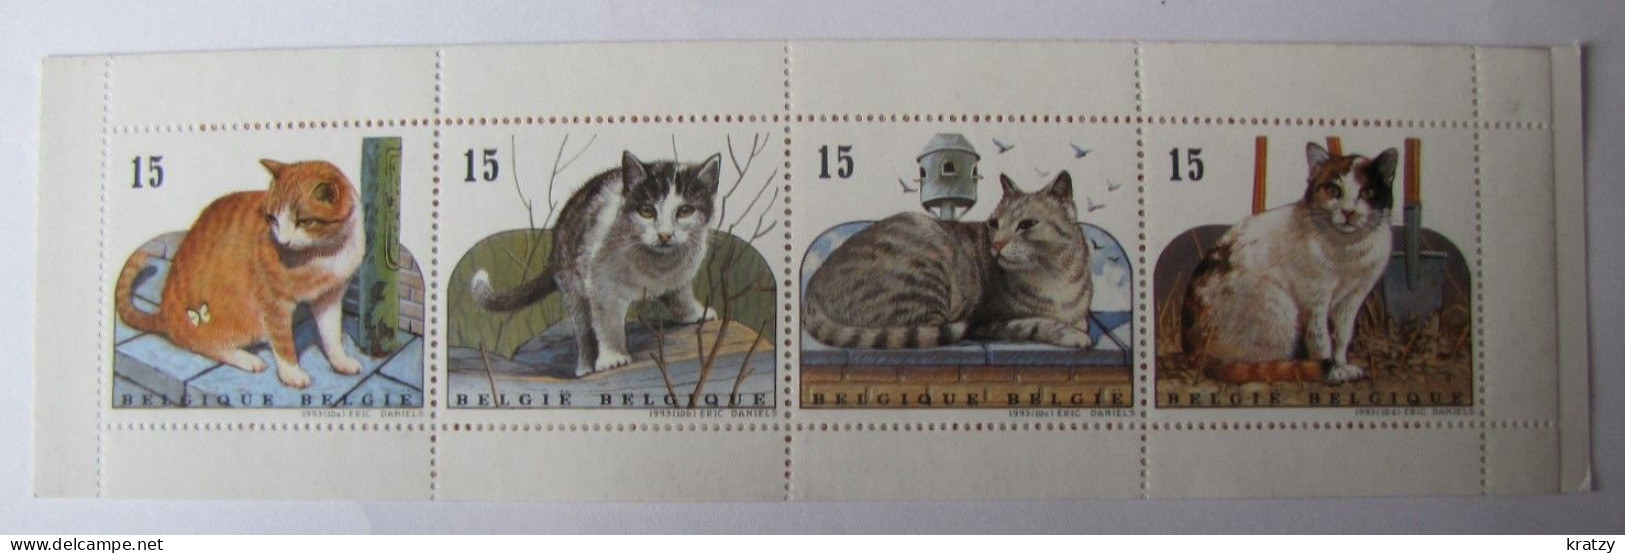 BELGIQUE - Feuillet - Chats - 1993 - Unused Stamps